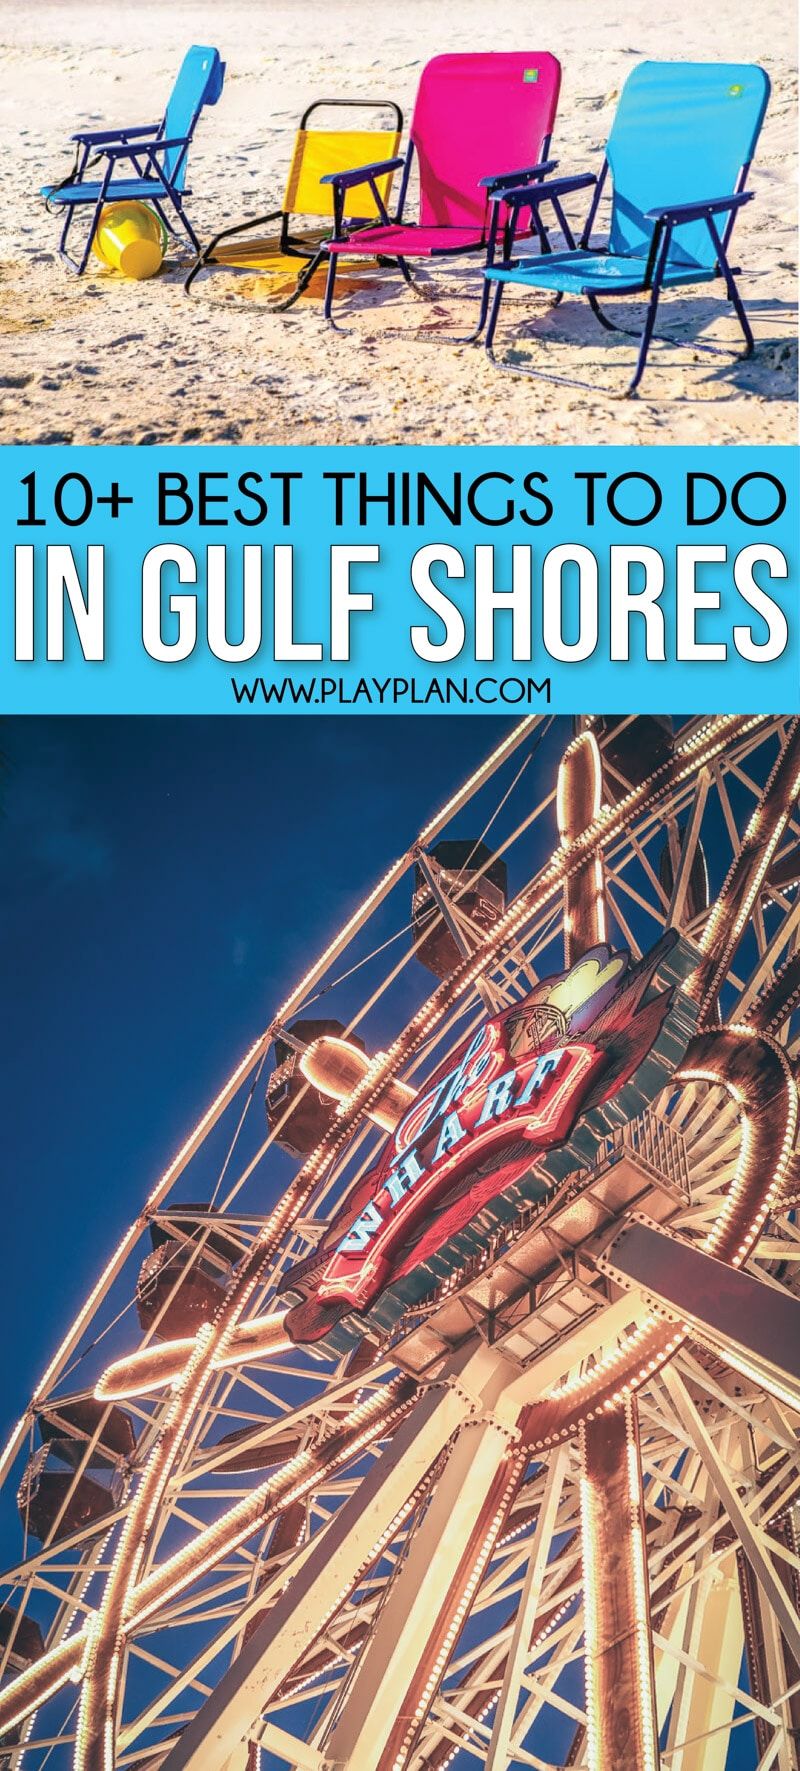 Les millors coses a fer a Gulf Shores, Alabama, no només a la platja. Un munt de fantàstiques idees per a nens, consells per allotjar-se a la zona, lloguers fantàstics, millors restaurants, atraccions principals i molt més.